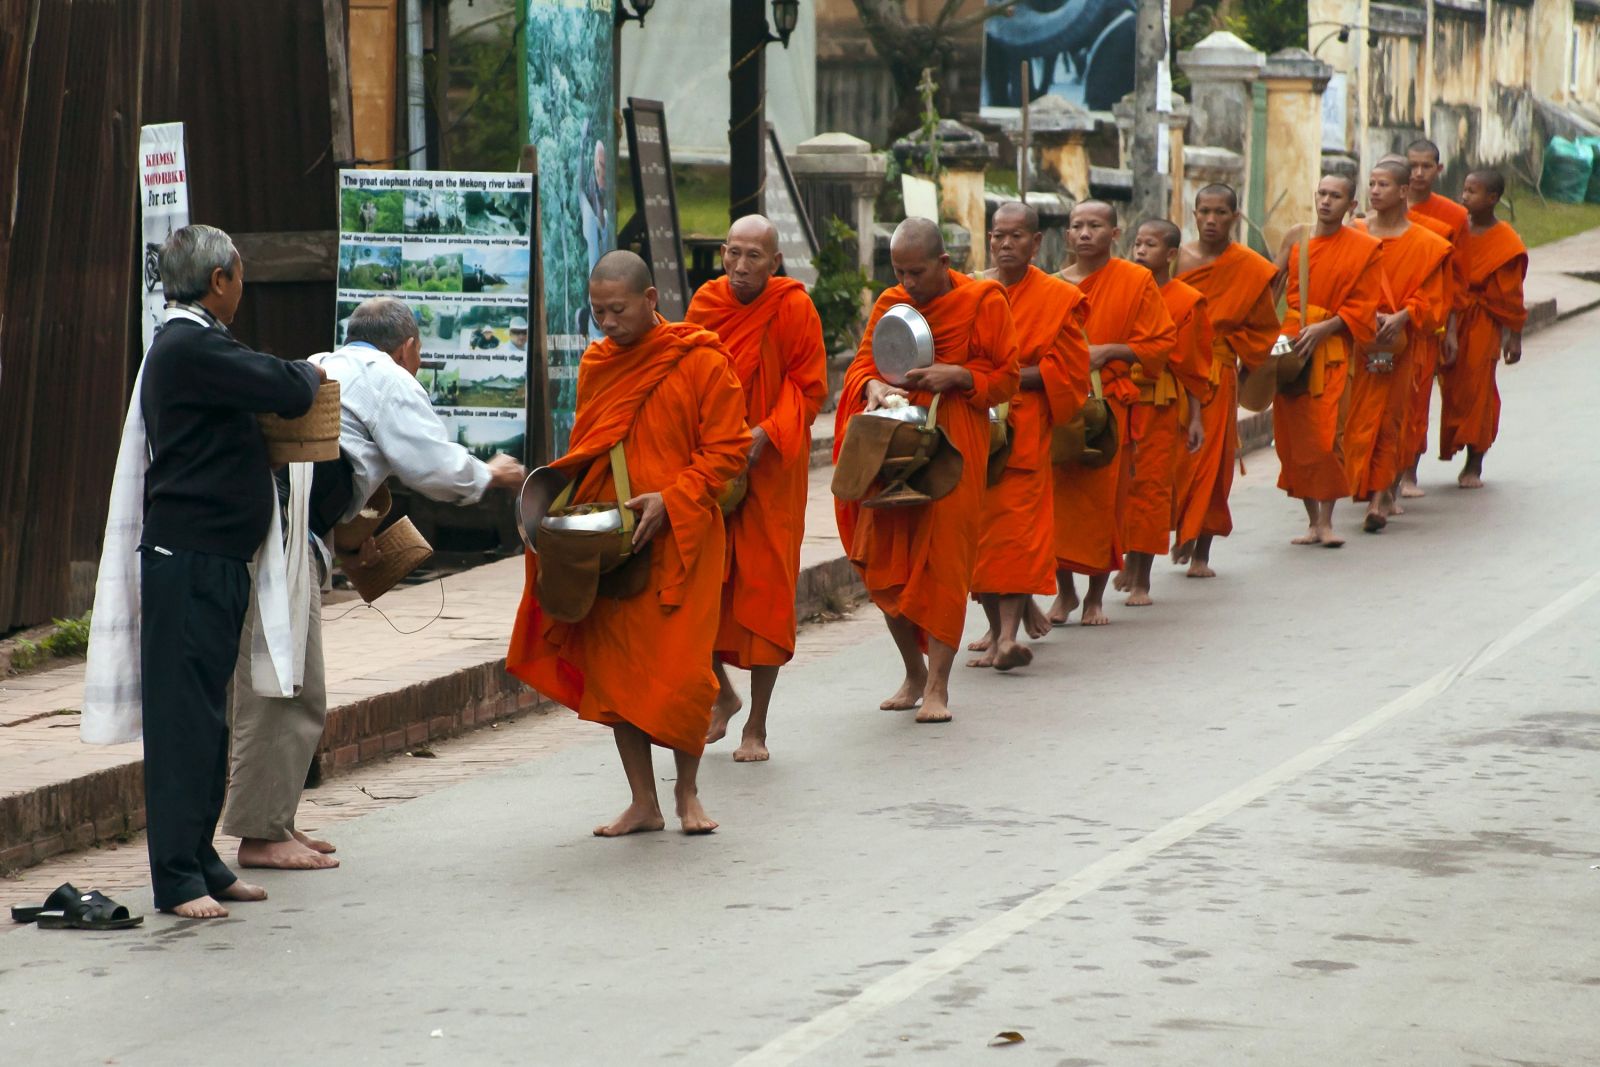 Almosengang der Mönche am frühen Morgen in Luang Prabang